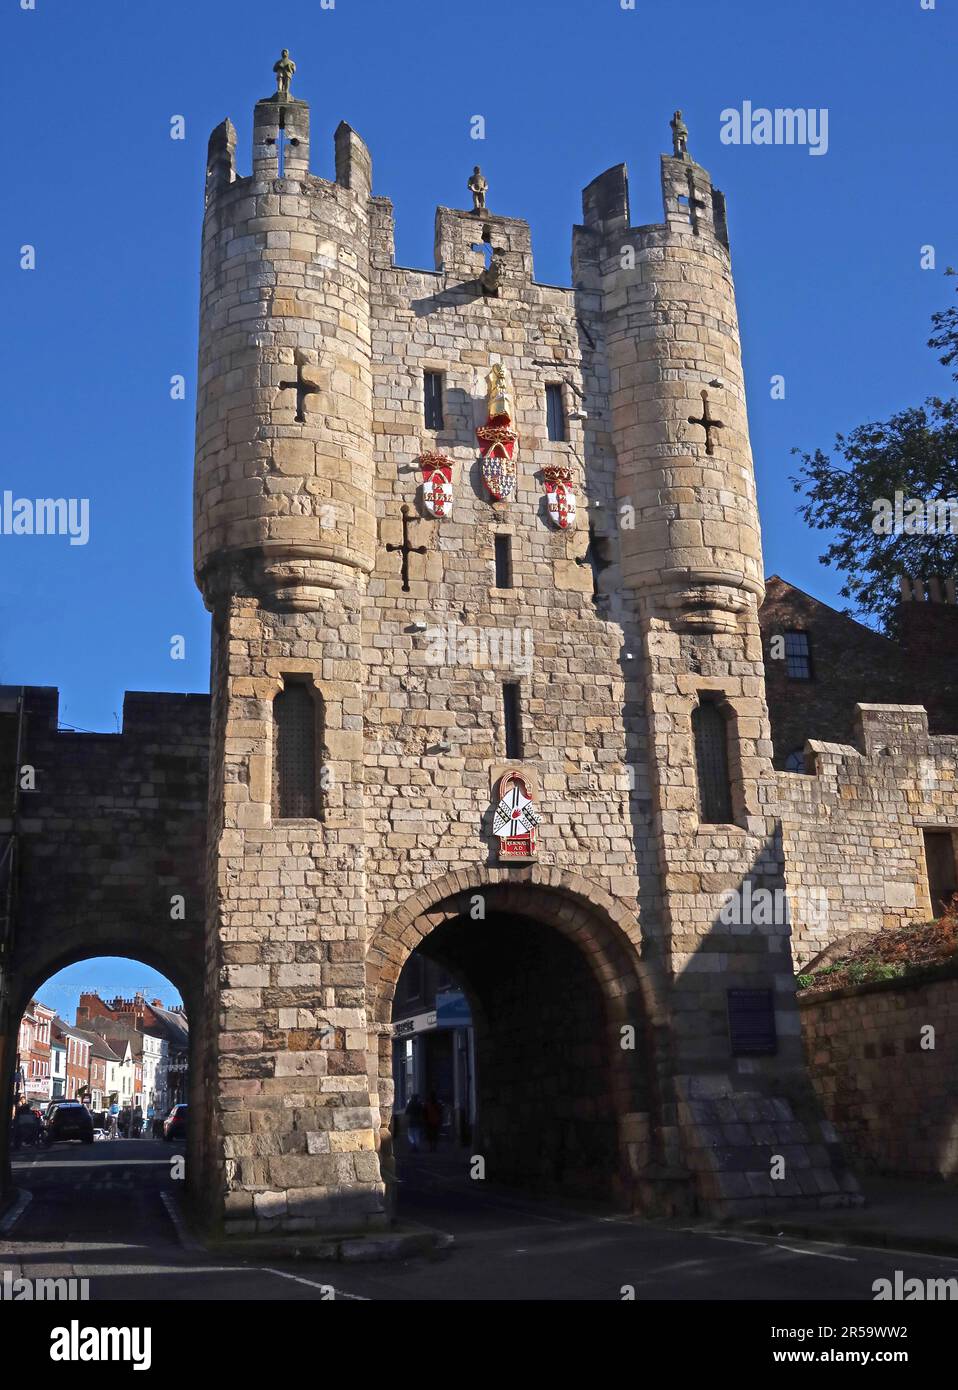 The Micklegate Bar York - ancienne porte historique médiévale, North Yorkshire, Angleterre, Royaume-Uni, YO1 6JX Banque D'Images